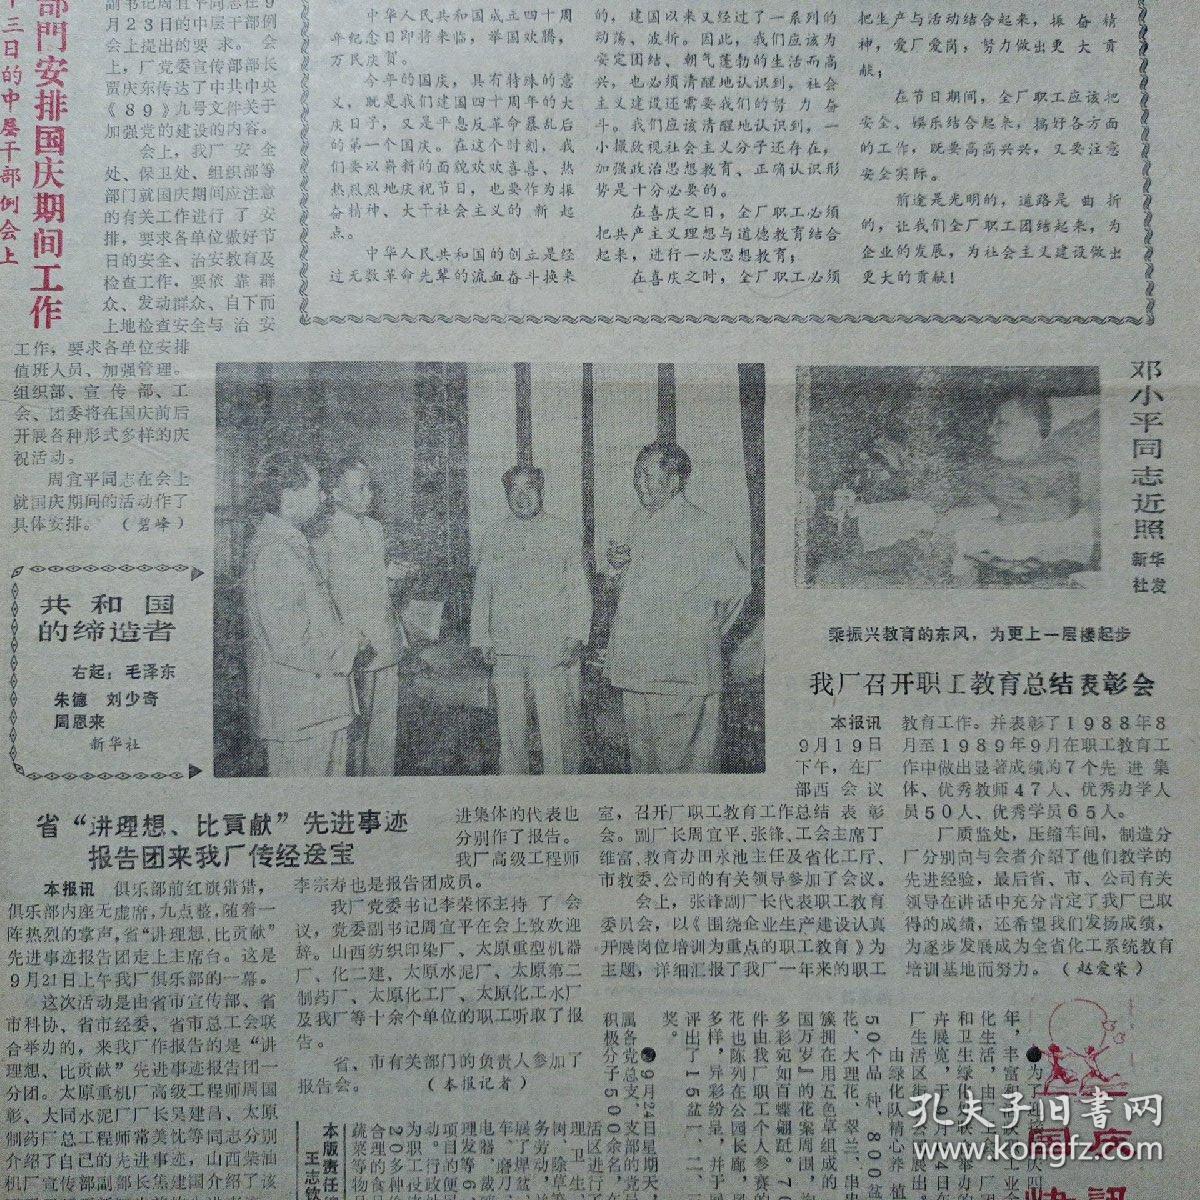 化肥简报1989年9月28日国庆40周年纪念报纸